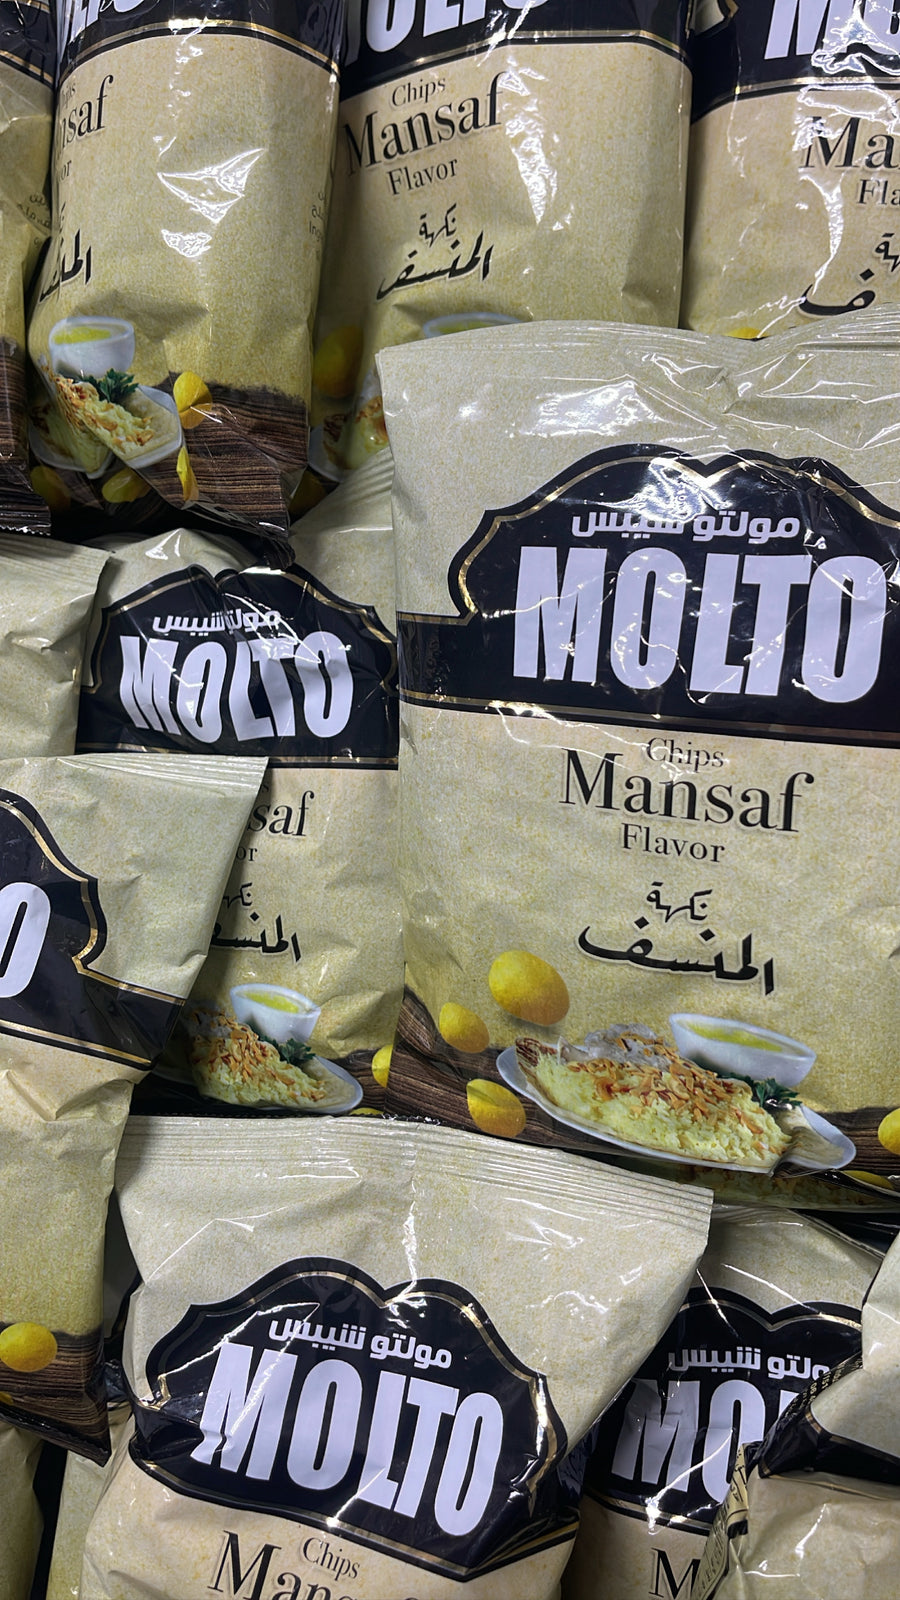 Mansaf Chips